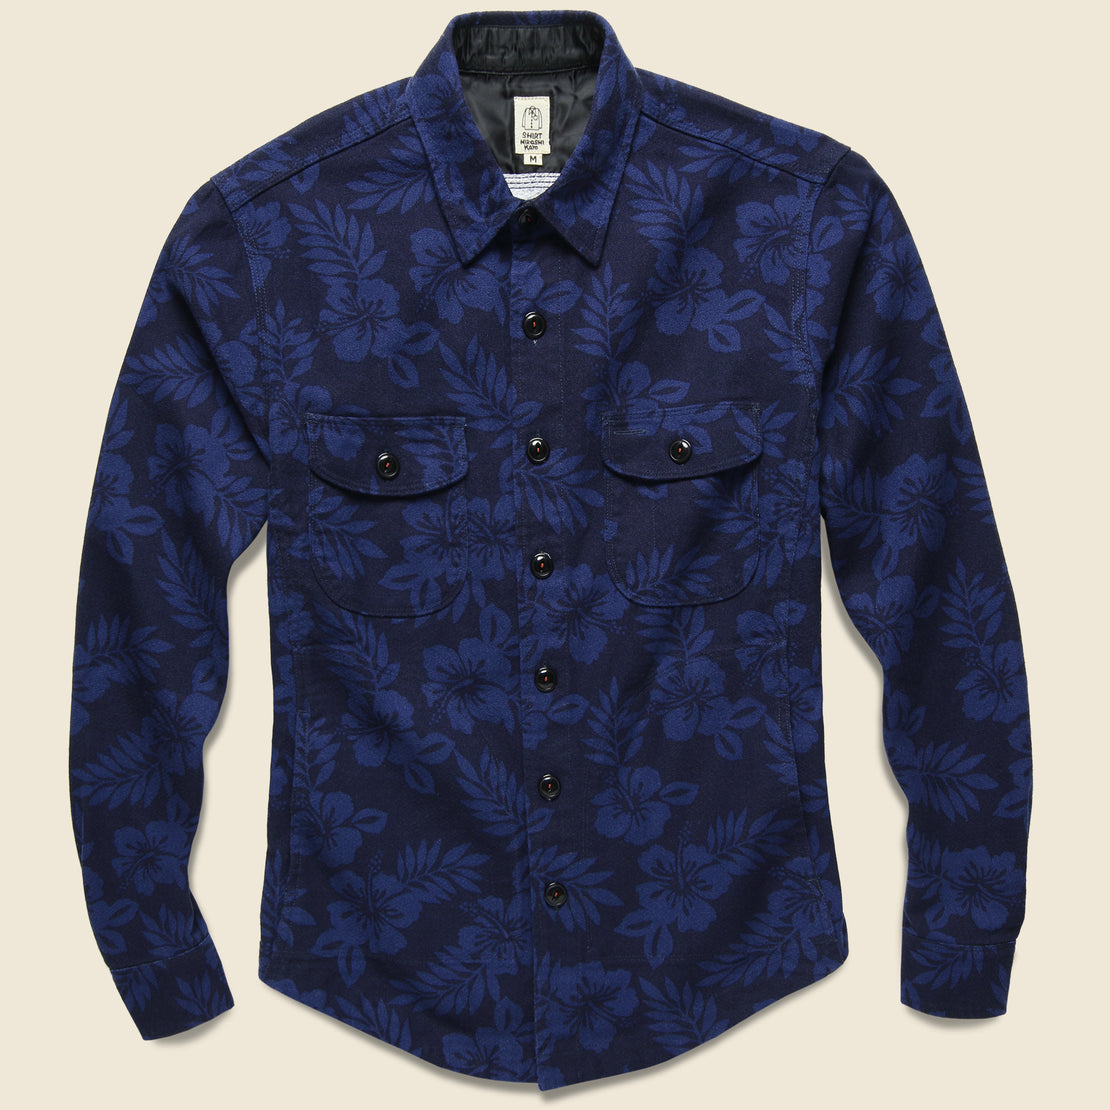 KATO Aloha Print Shirt Jacket - Navy